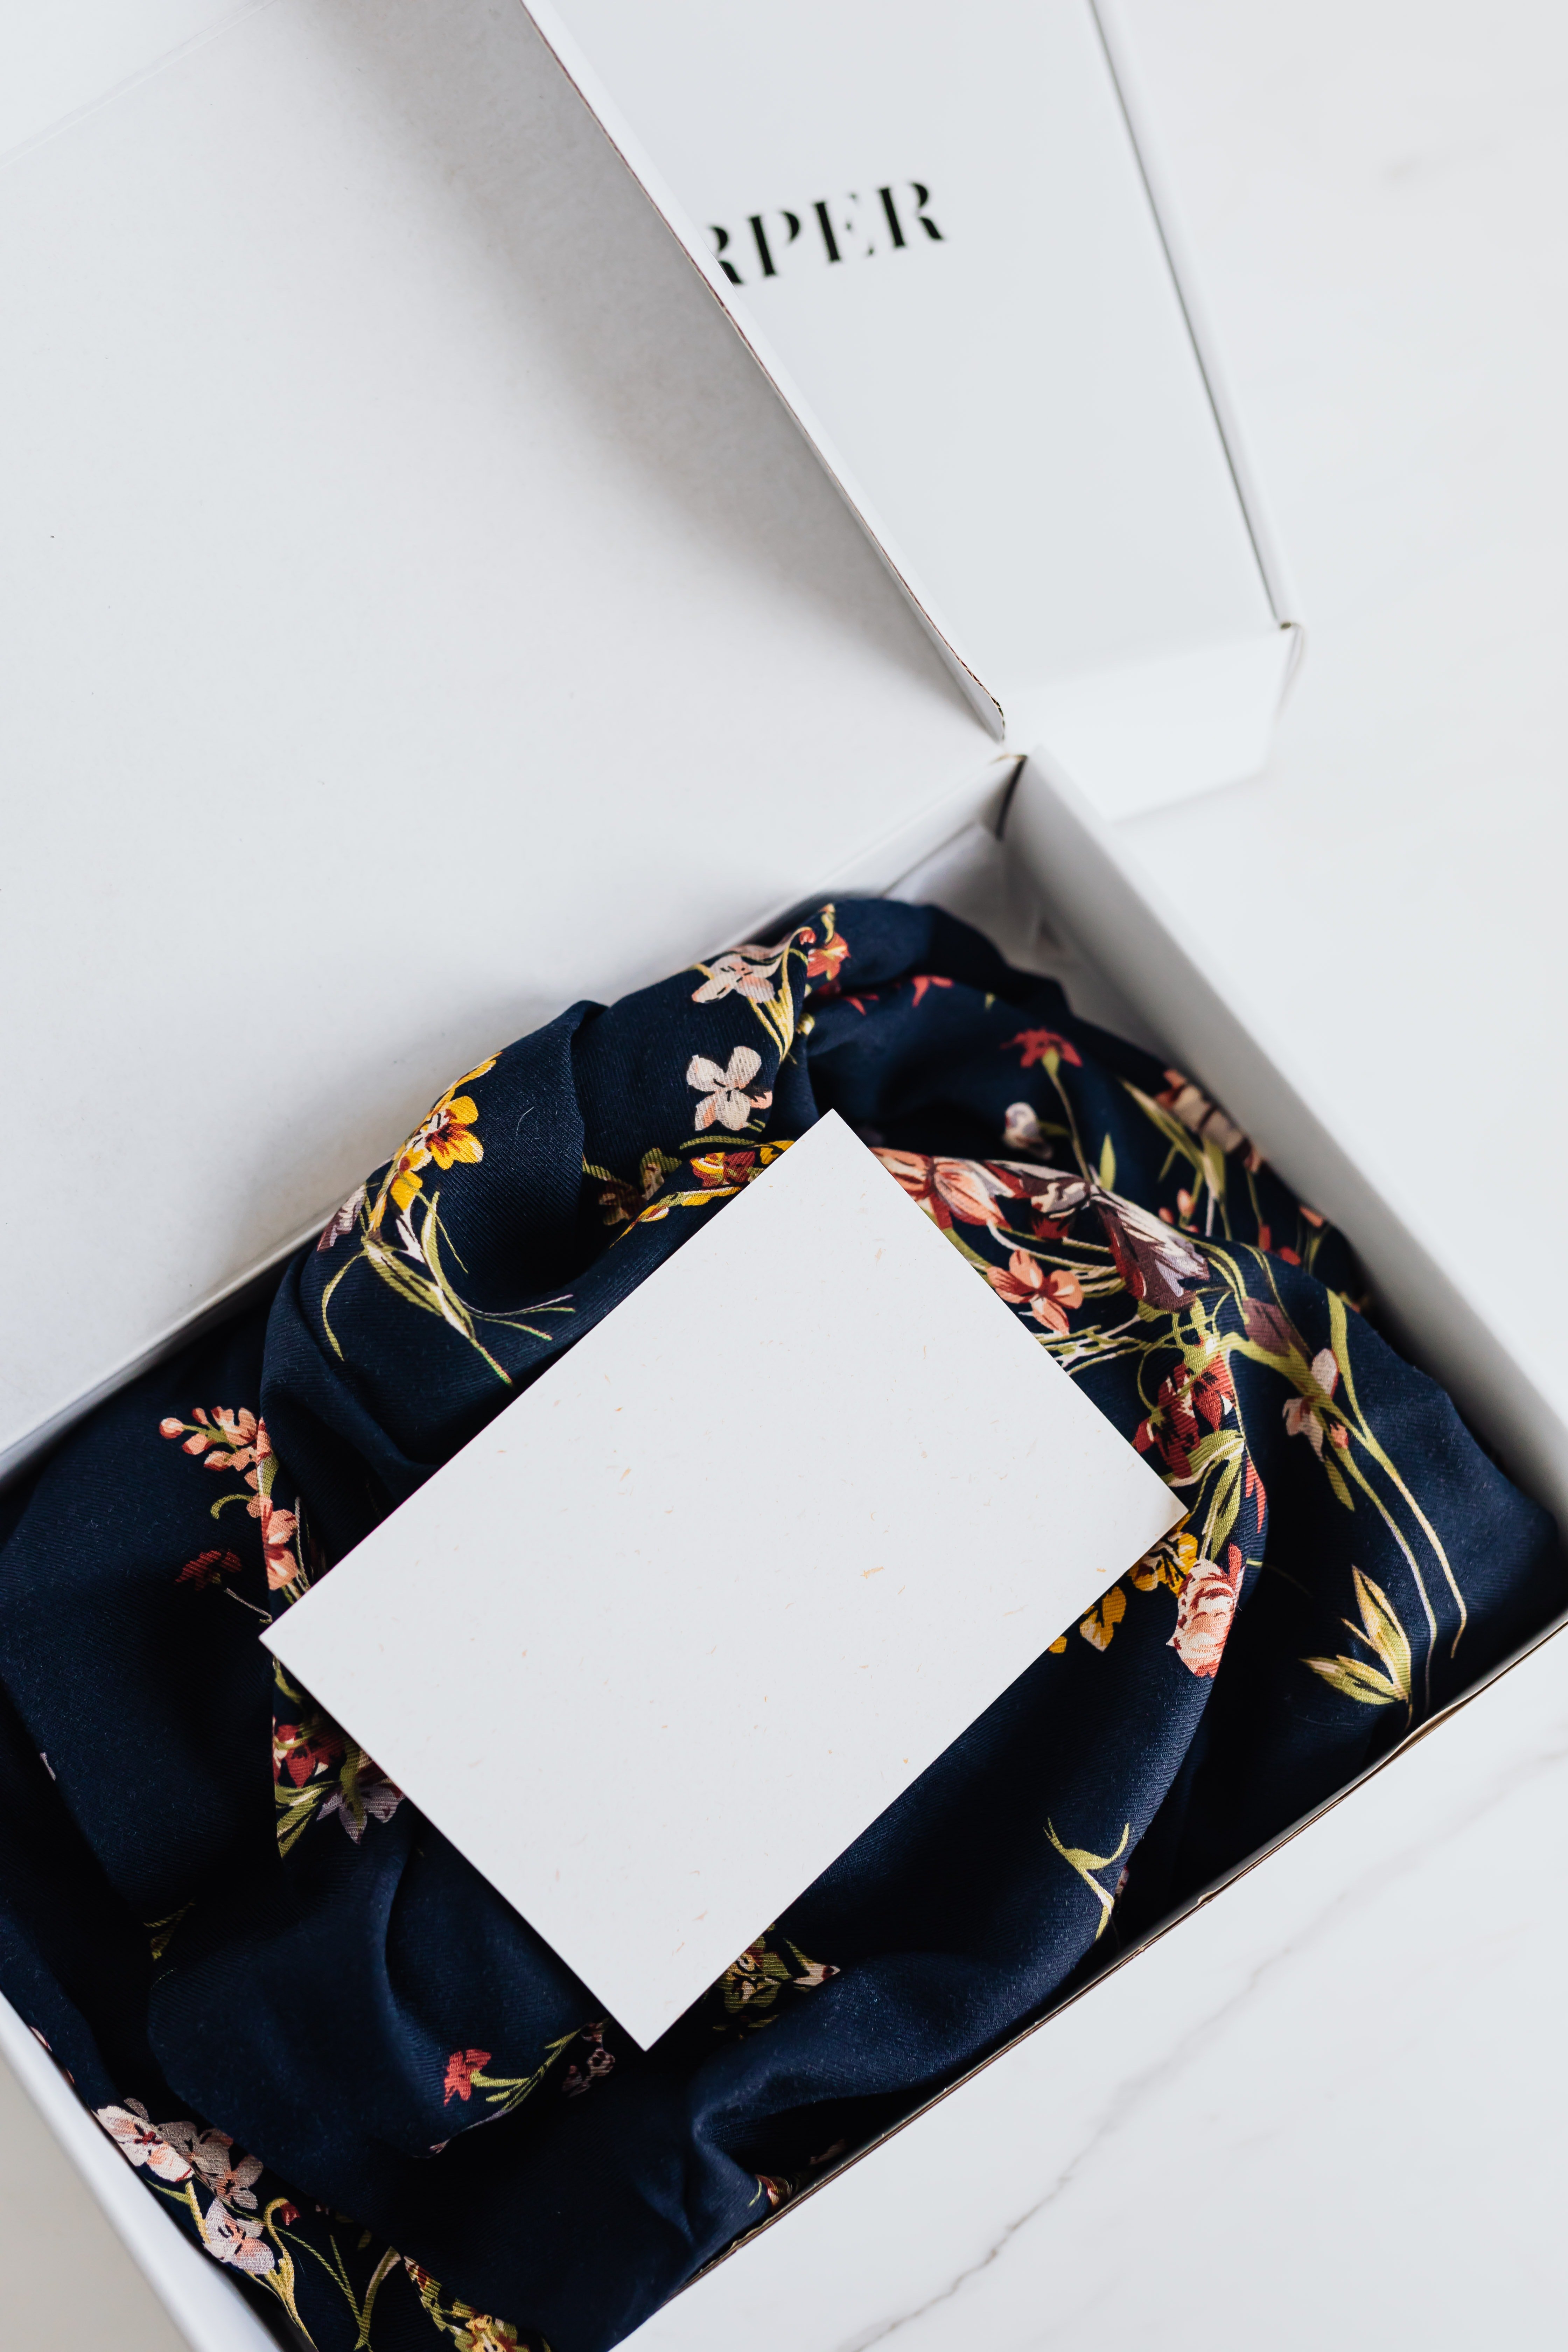 Una caja con un traje nuevo. | Foto: Pexels